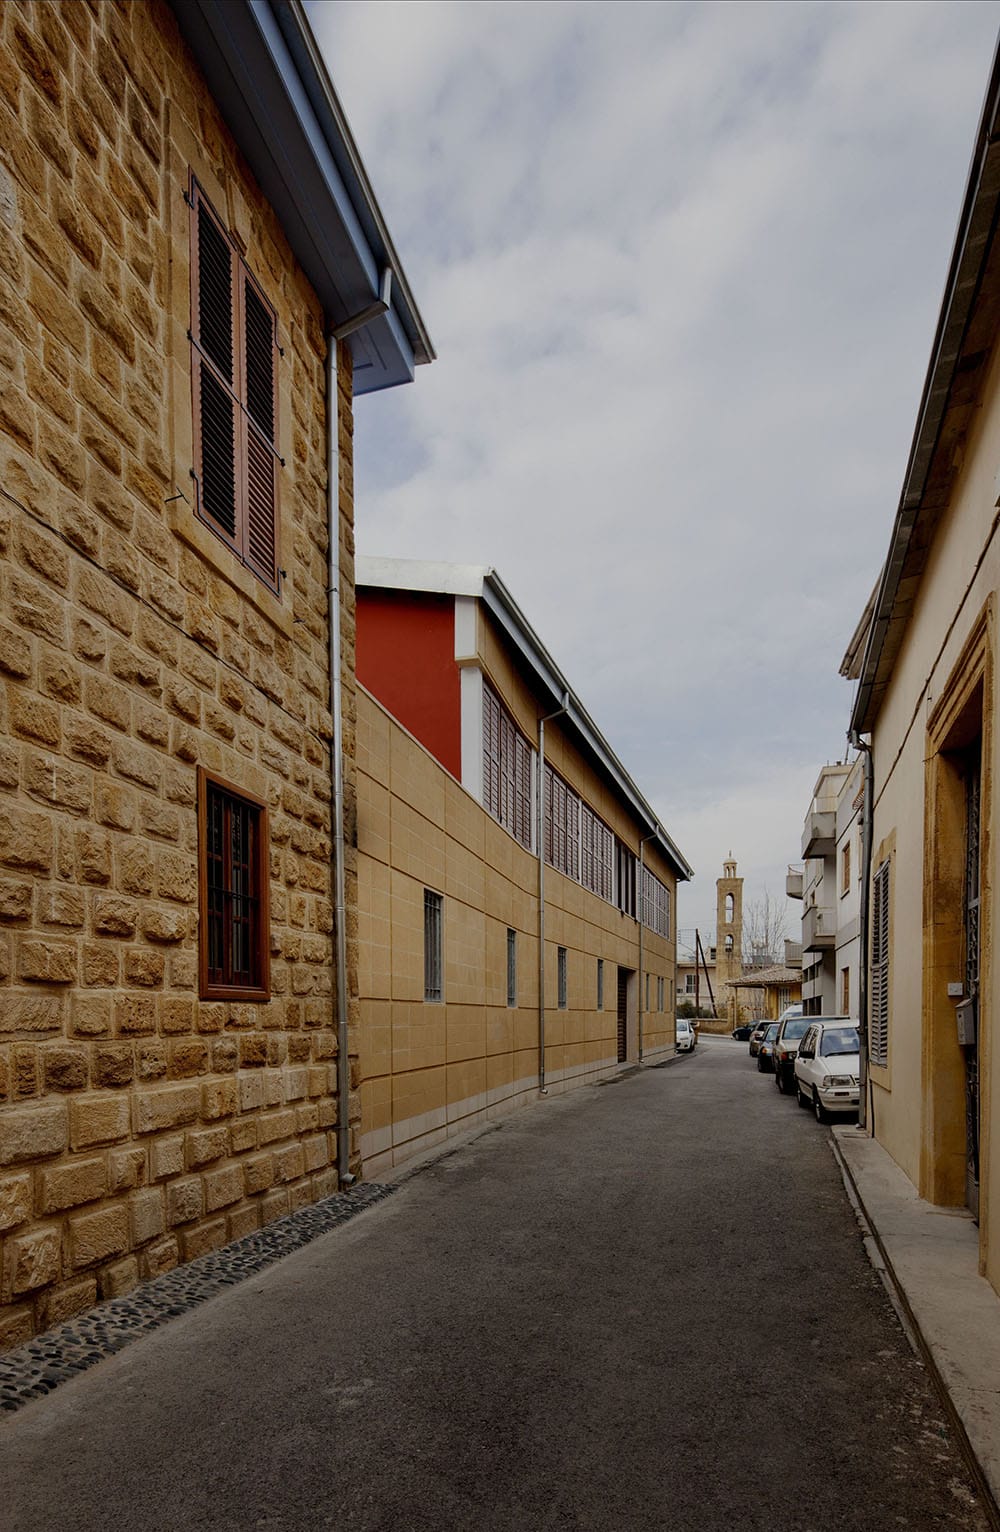 Οδός Αρχιμανδρίτη Κυπριανού από νότια προς βόρεια.  Το παλιό διατηρητέο διώροφο ανακαινίστηκε και δεξιά-αριστερά προστέθηκαν δύο νέες πτέρυγες πάνω στο ίχνος των κτιρίων που προϋπήρχαν (σύμφωνα με τα χωρομετρικά σχέδια), αποκαθιστώντας έτσι τον οικοδομικό ιστό της παλιάς πόλης.  Στο βάθος το καμπαναριό του Αγίου Αντωνίου, © Creative Photo Room